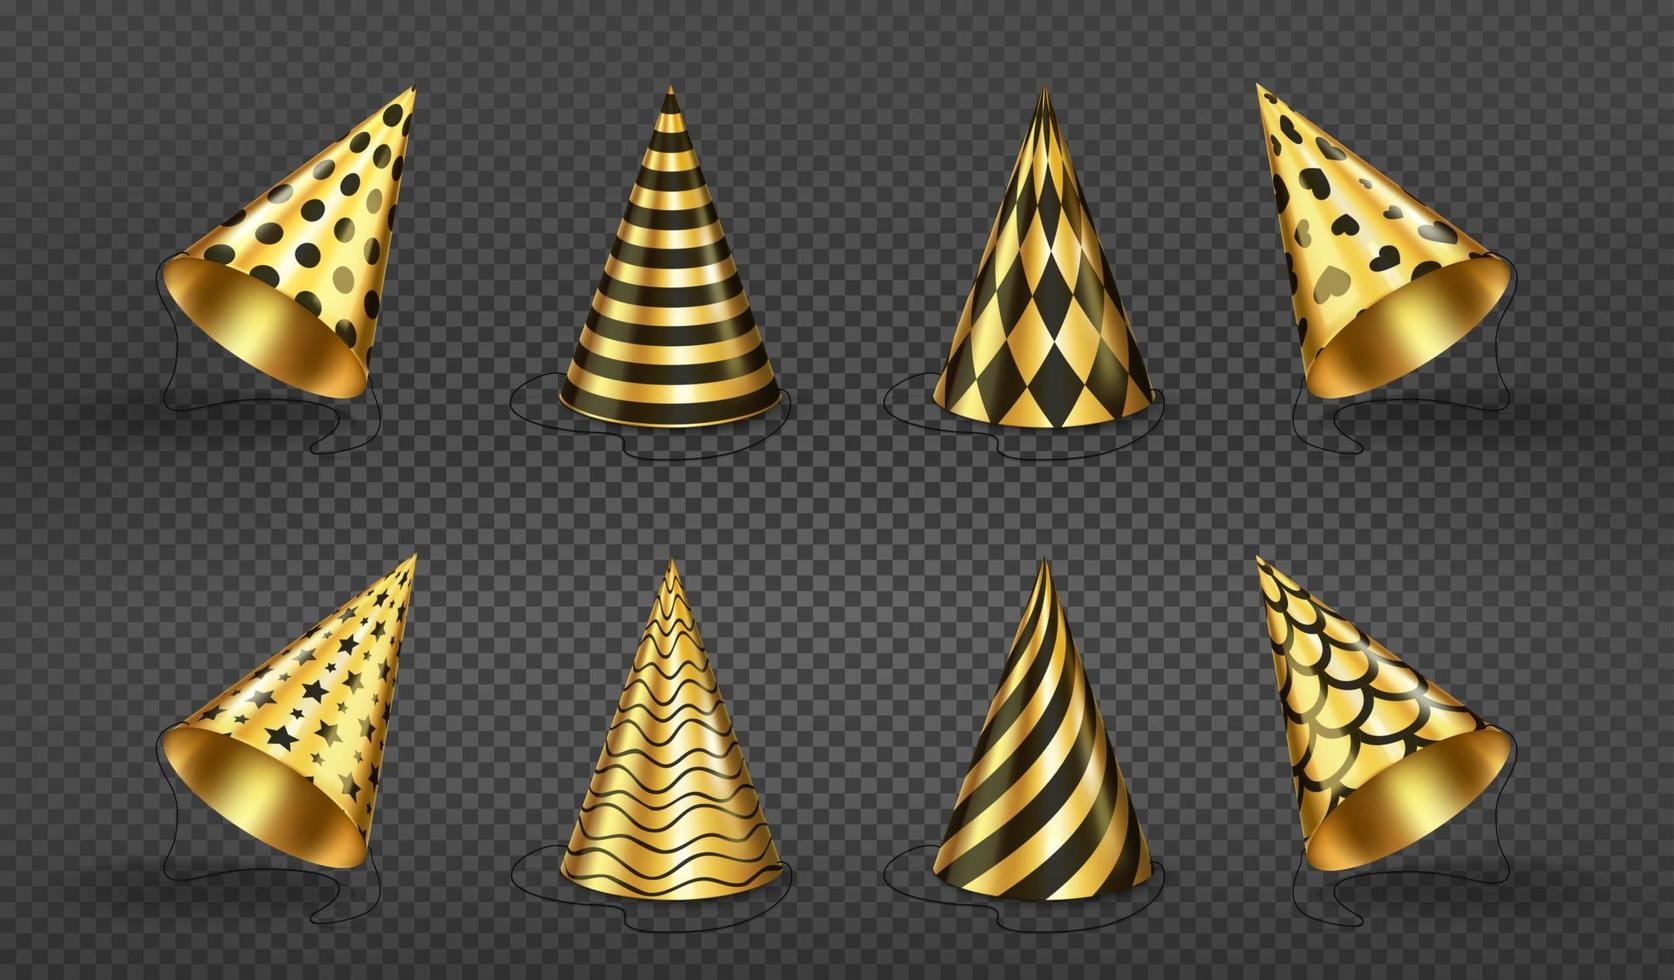 sombreros de fiesta, gorras de cumpleaños de color dorado y negro vector